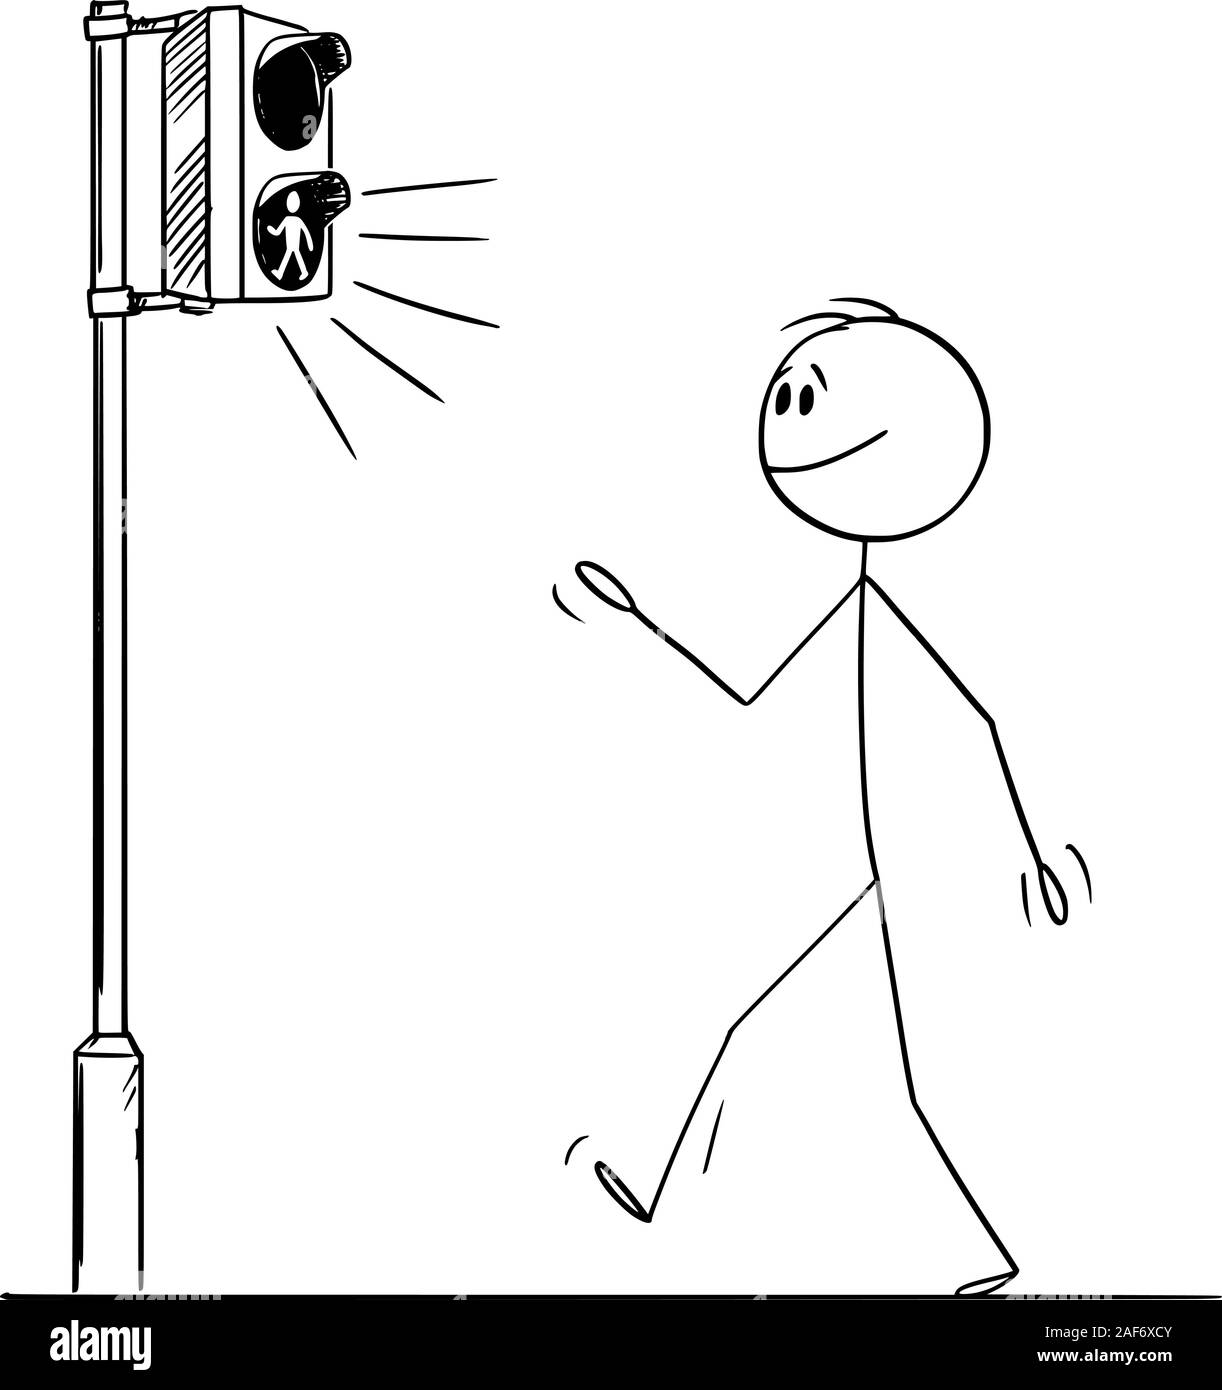 Vektor cartoon Strichmännchen Zeichnen konzeptionelle Darstellung der Mann oder Fußgänger zu Fuß auf der Kreuzung, da grünes Licht auf Straße Verkehr leuchtet. Stock Vektor